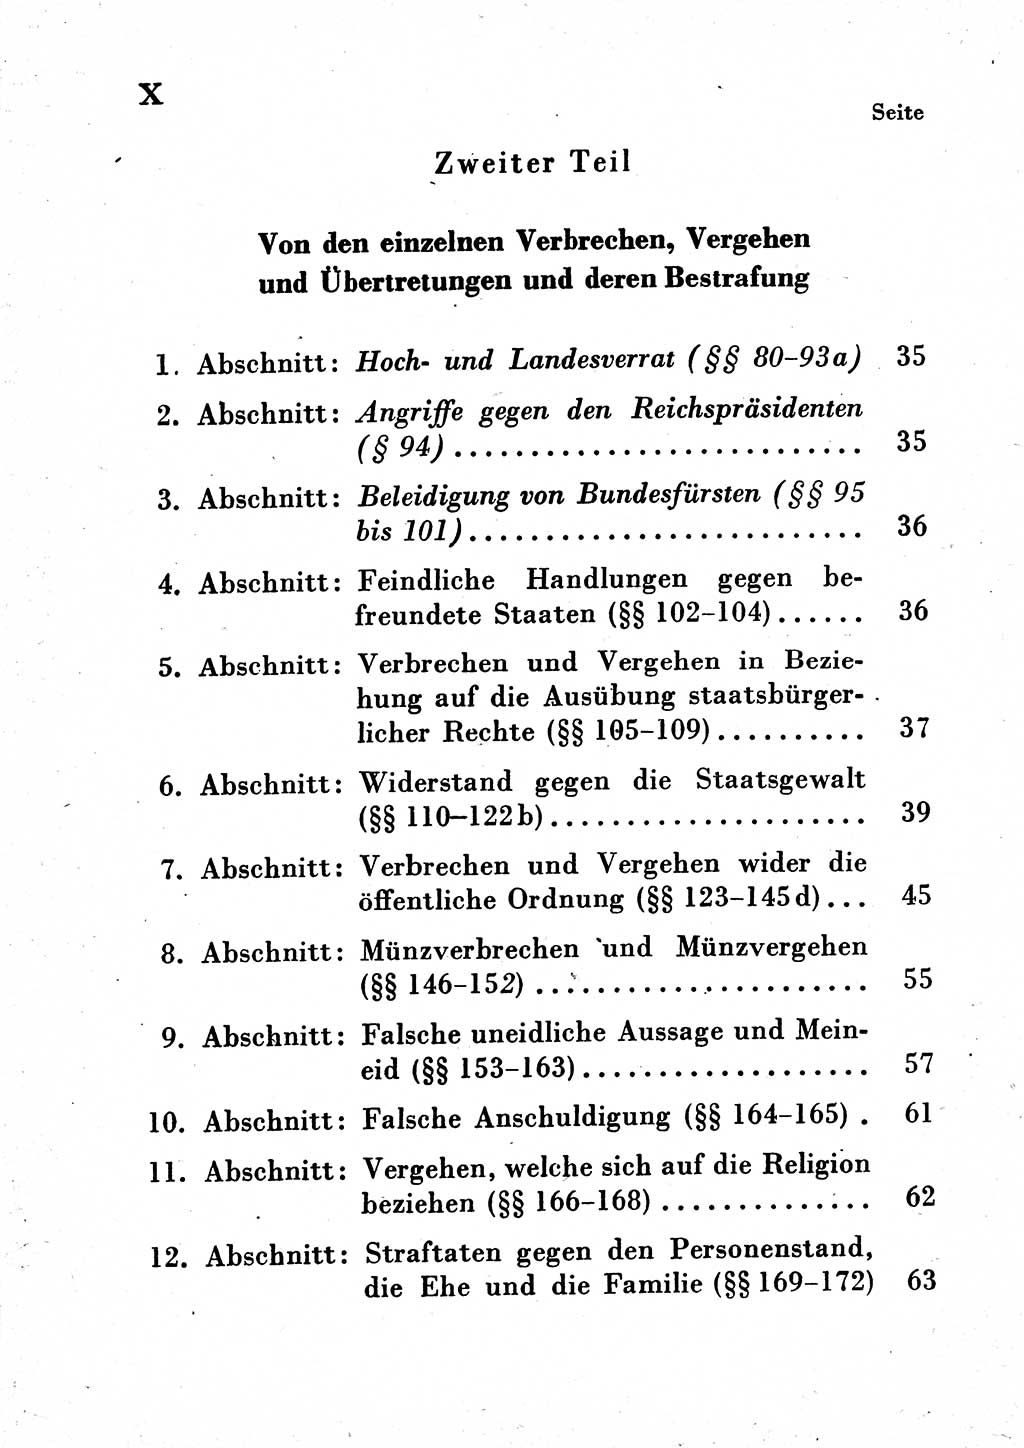 Einleitung Strafgesetzbuch (StGB) und andere Strafgesetze [Deutsche Demokratische Republik (DDR)] 1954, Seite 10 (Einl. StGB Strafges. DDR 1954, S. 10)